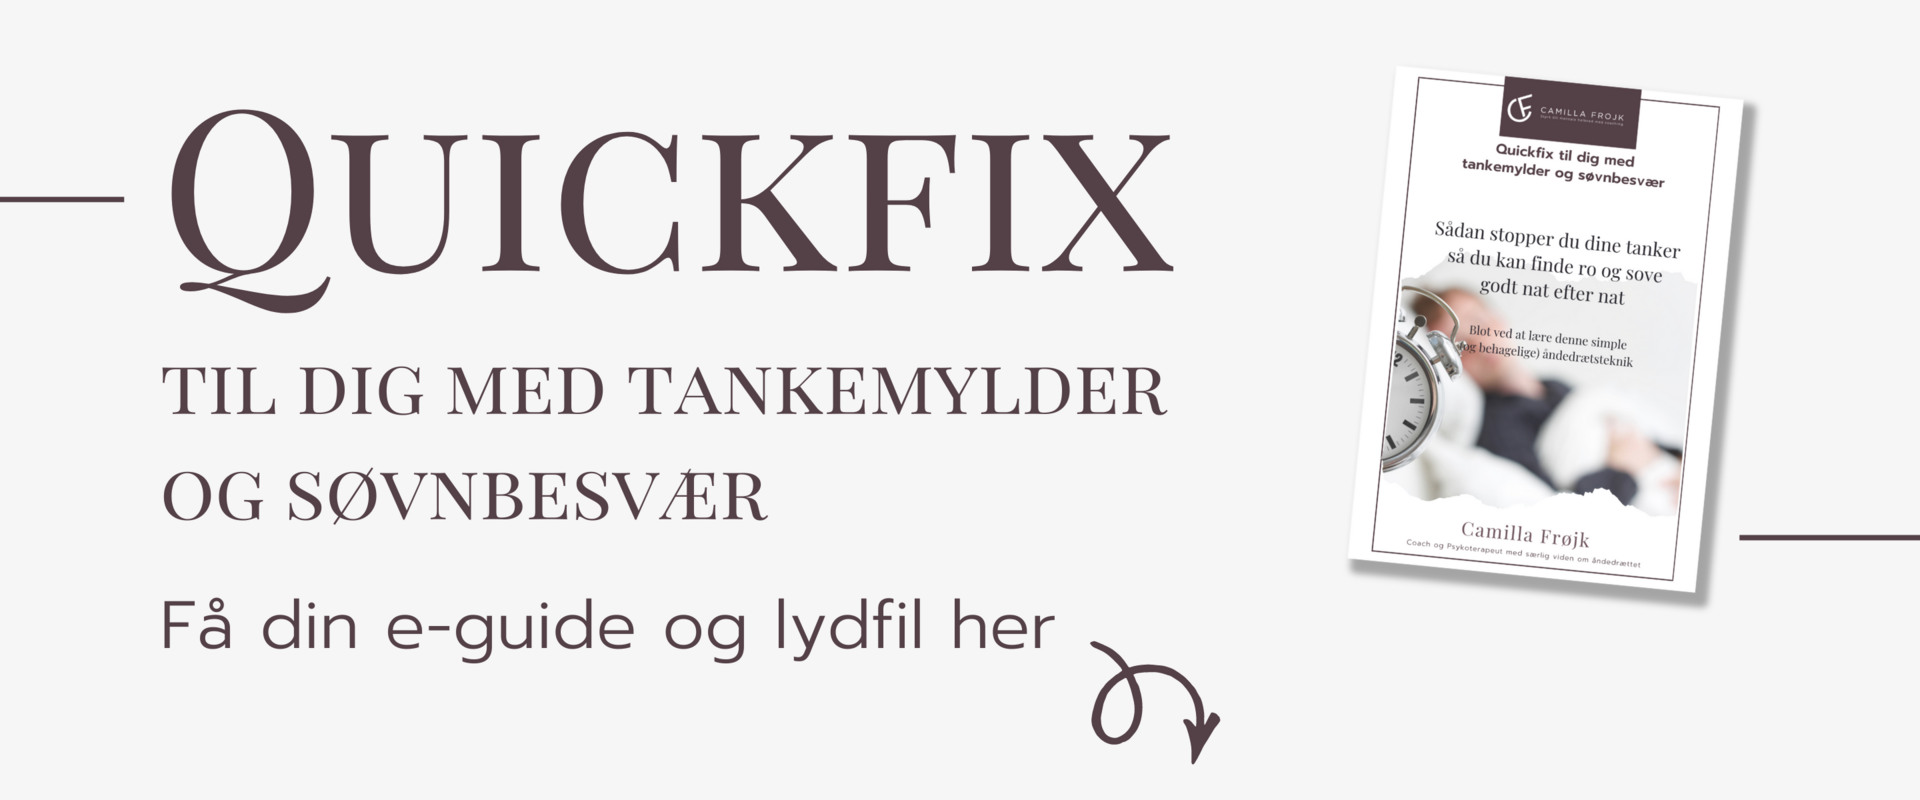 Quickfix